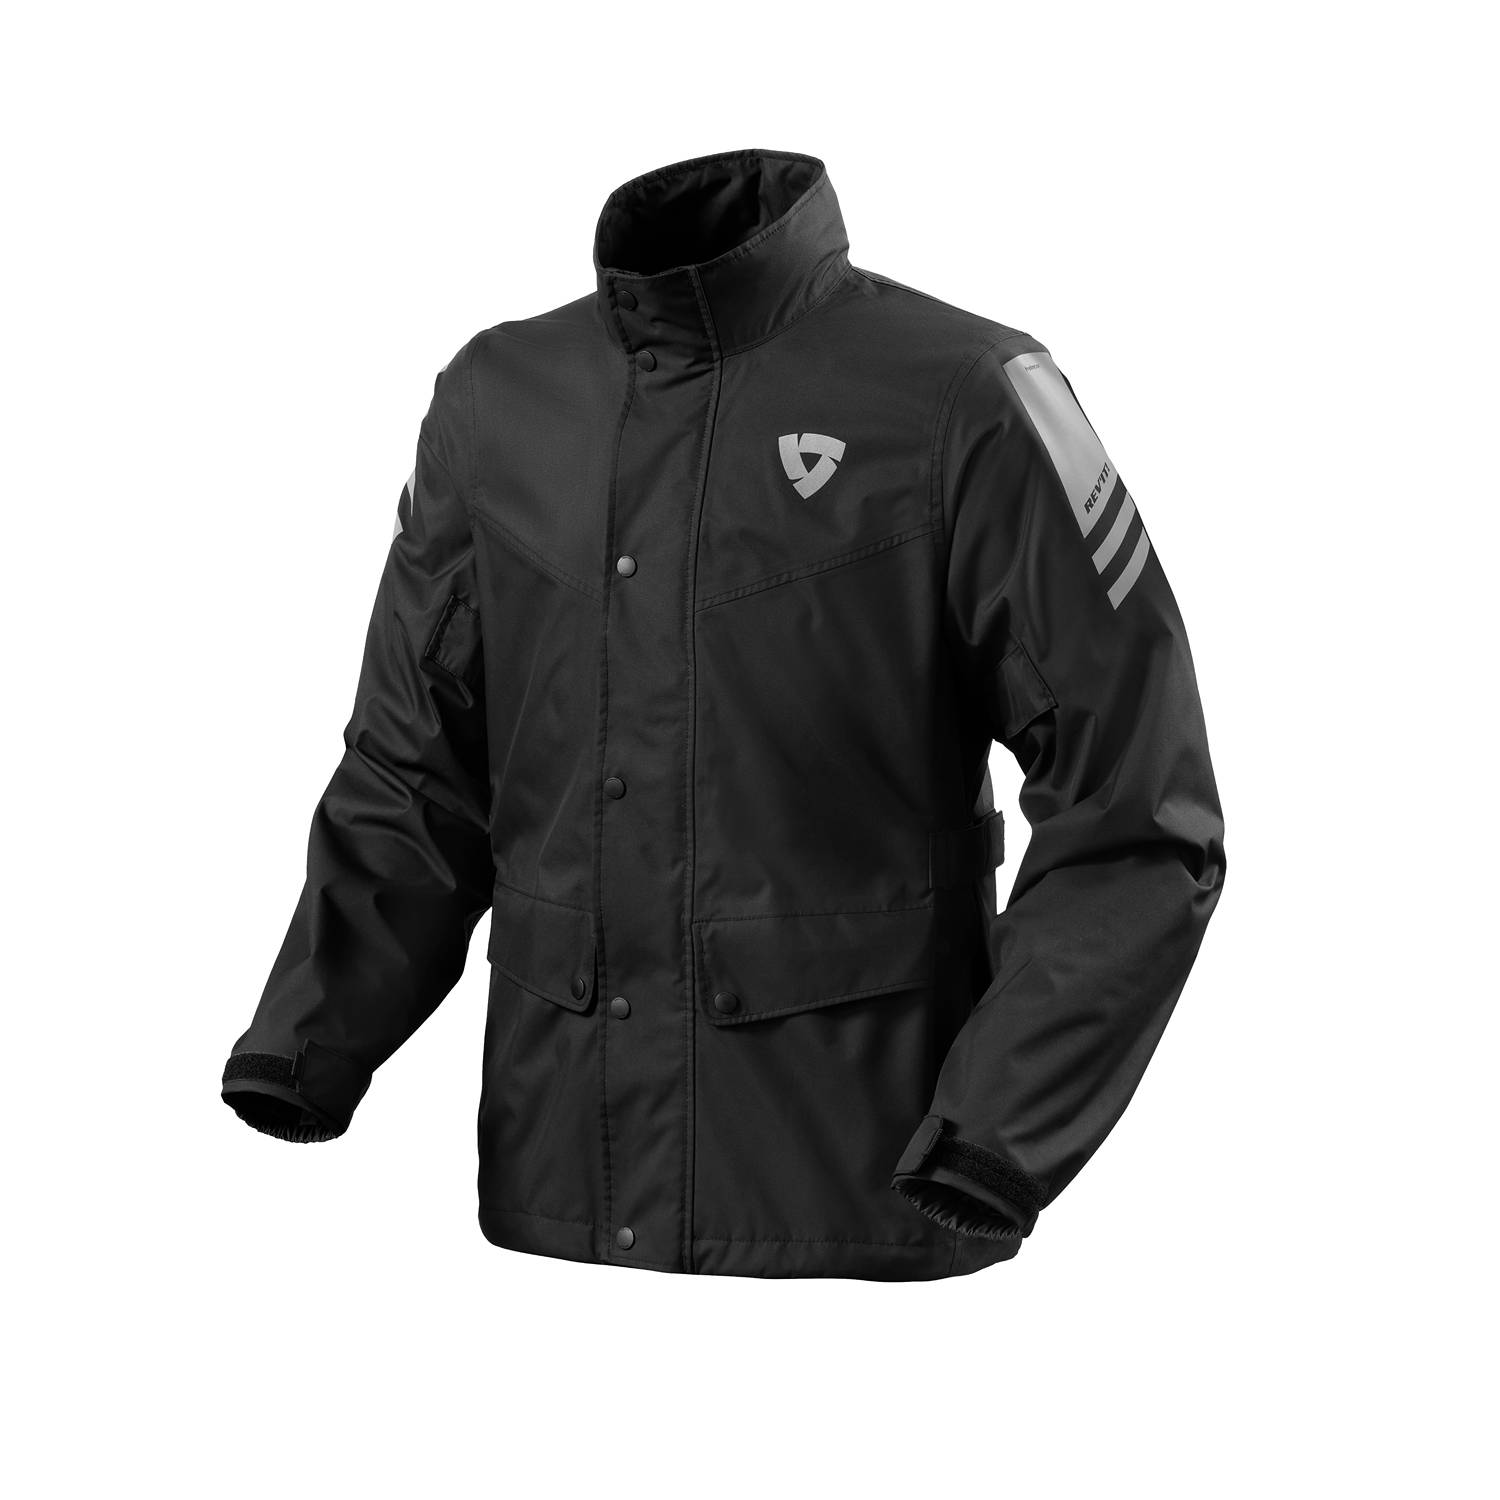 Image of REV'IT! Nitric 4 H2O Rain Jacket Black Size XL EN